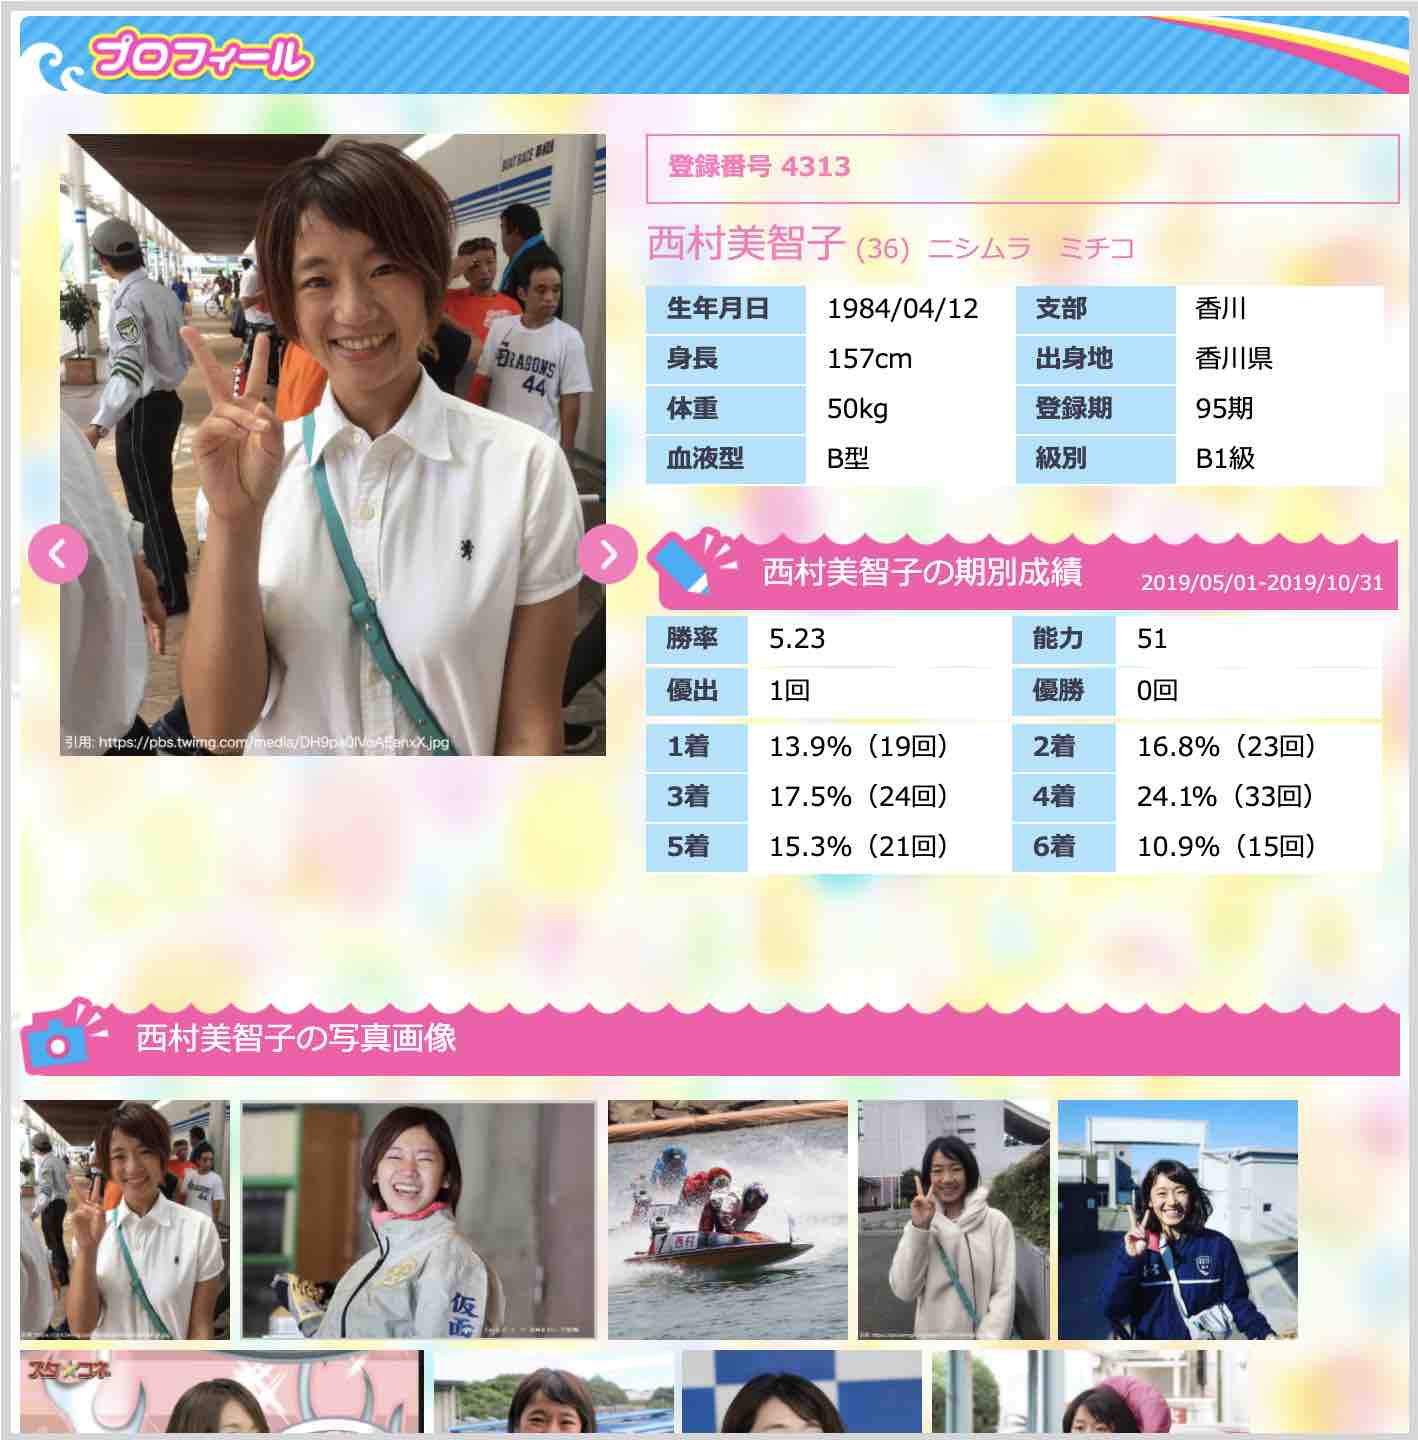 競艇女子、ボートレーサー西村美智子選手の写真や情報